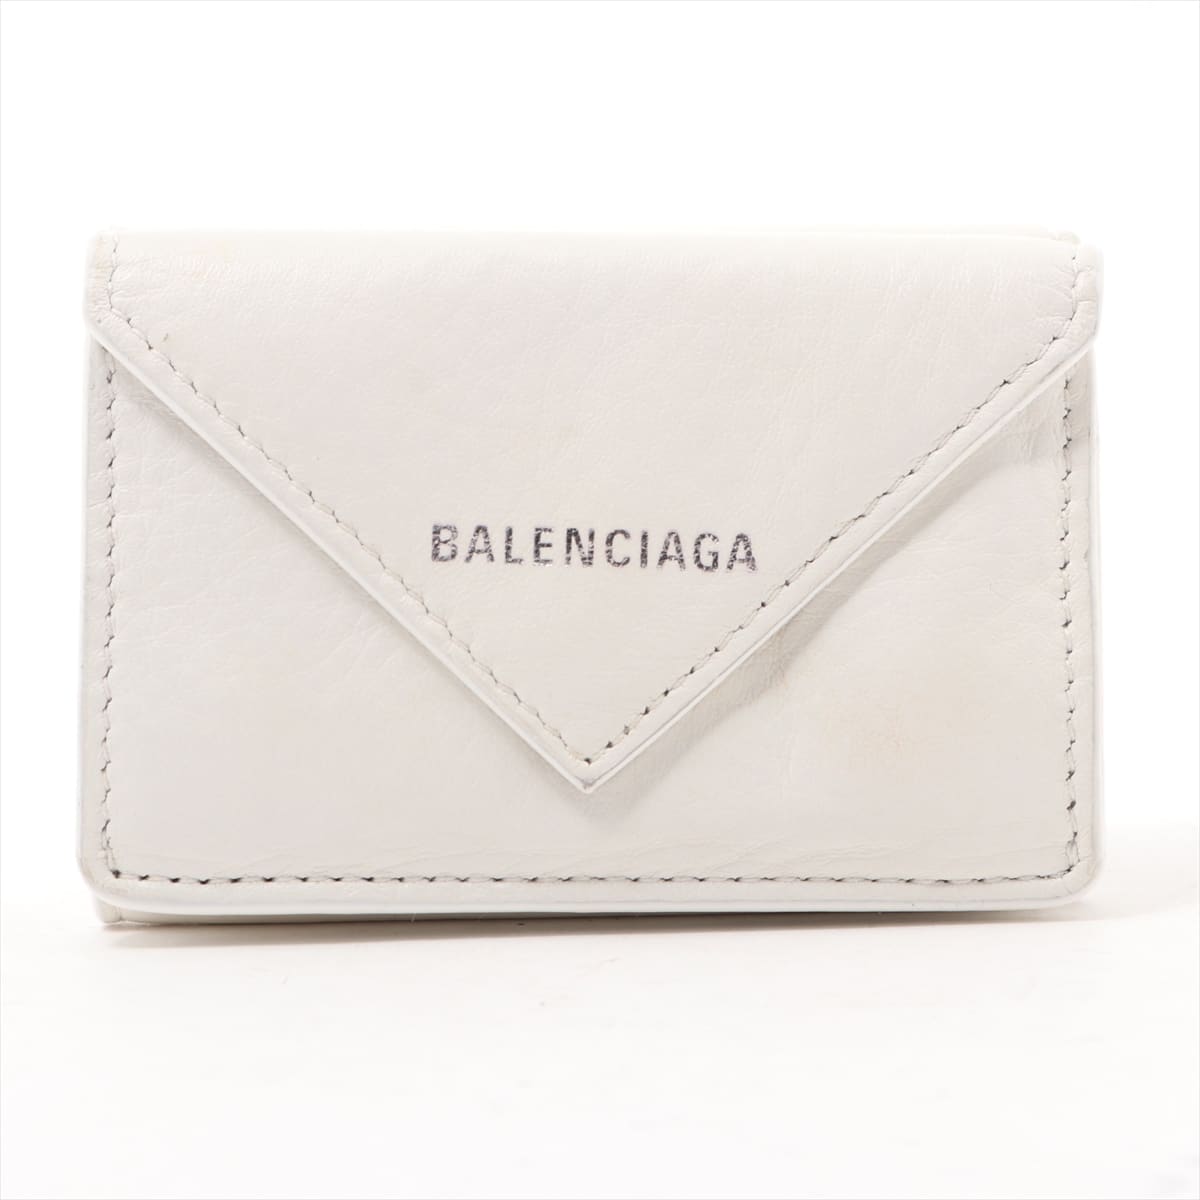 Balenciaga Papier Mini 391446 Leather Wallet White